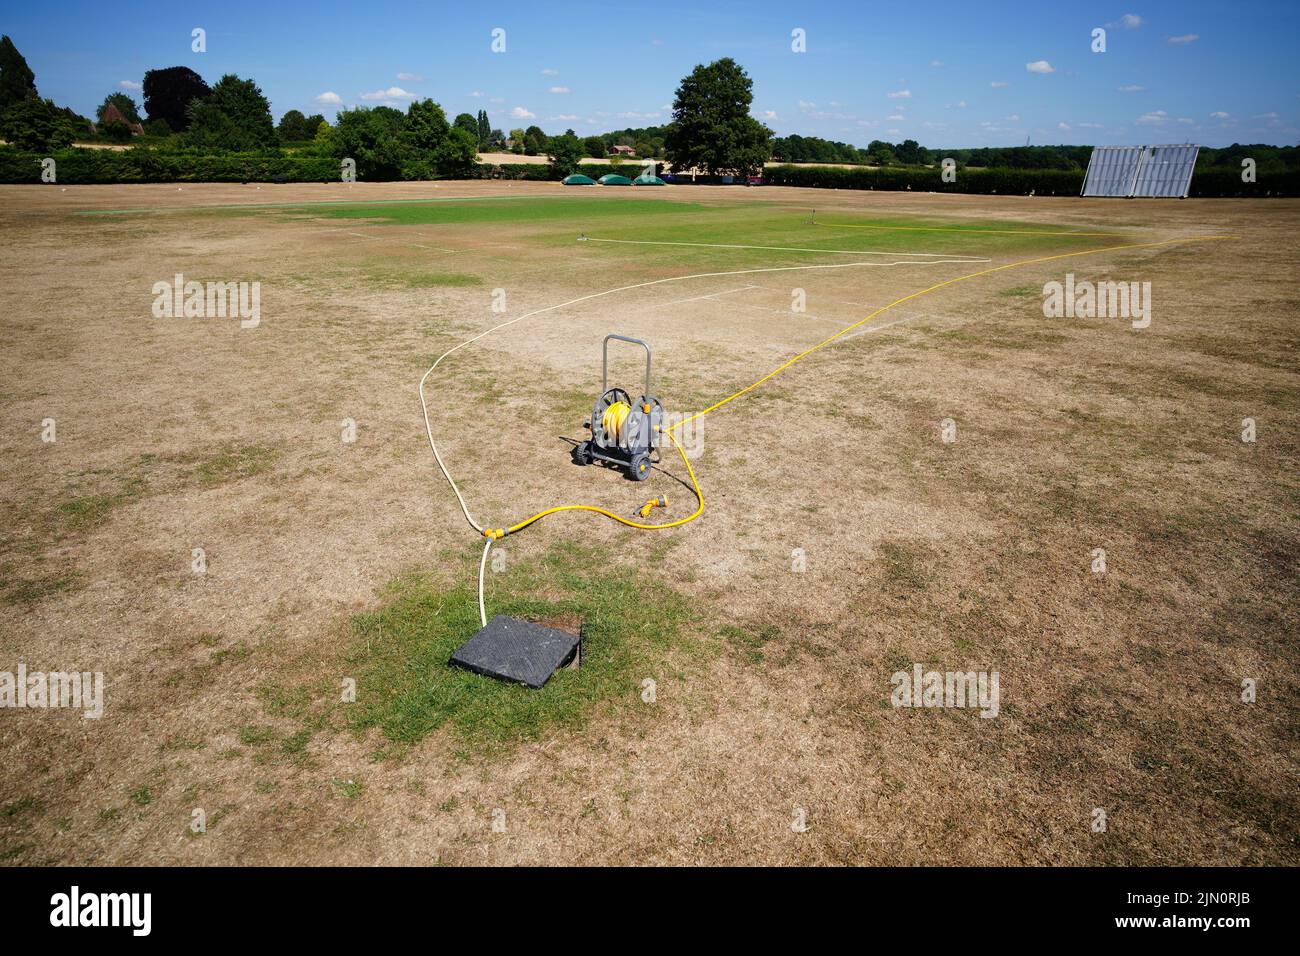 Hierba seca en el campo de cricket en el pueblo de Odiham en Hampshire. Gran Bretaña está preparada para otra ola de calor que durará más que el período de calor récord de julio, con máximos de hasta 35C que se esperan la próxima semana. Fecha de la foto: Lunes 8 de agosto de 2022. Foto de stock